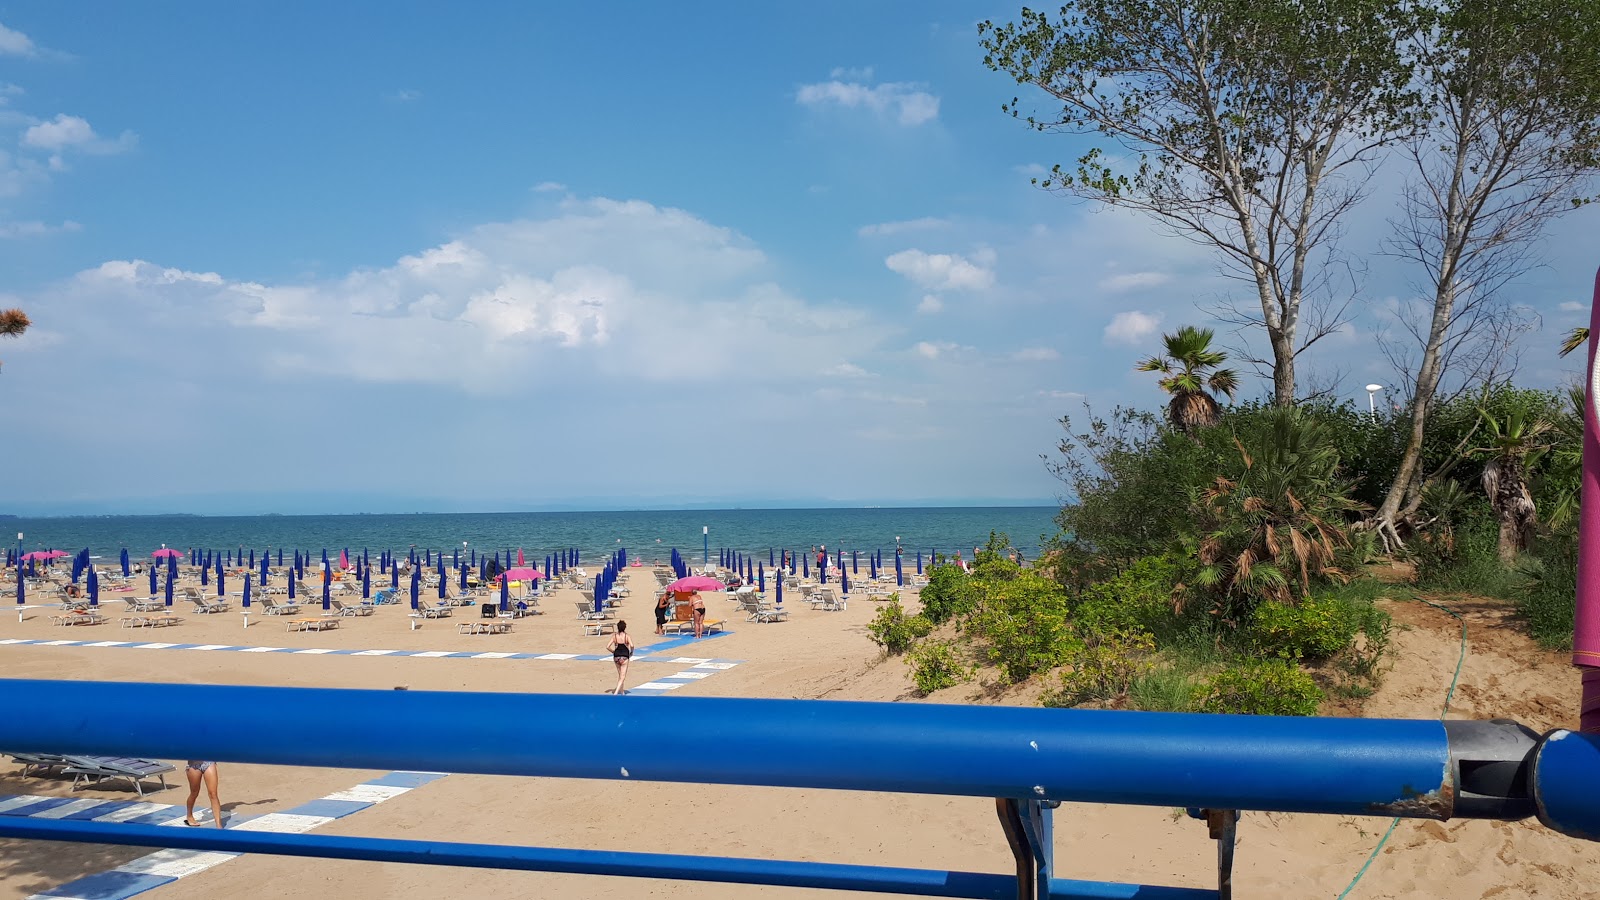 Zdjęcie Spiaggia Lignano - popularne miejsce wśród znawców relaksu